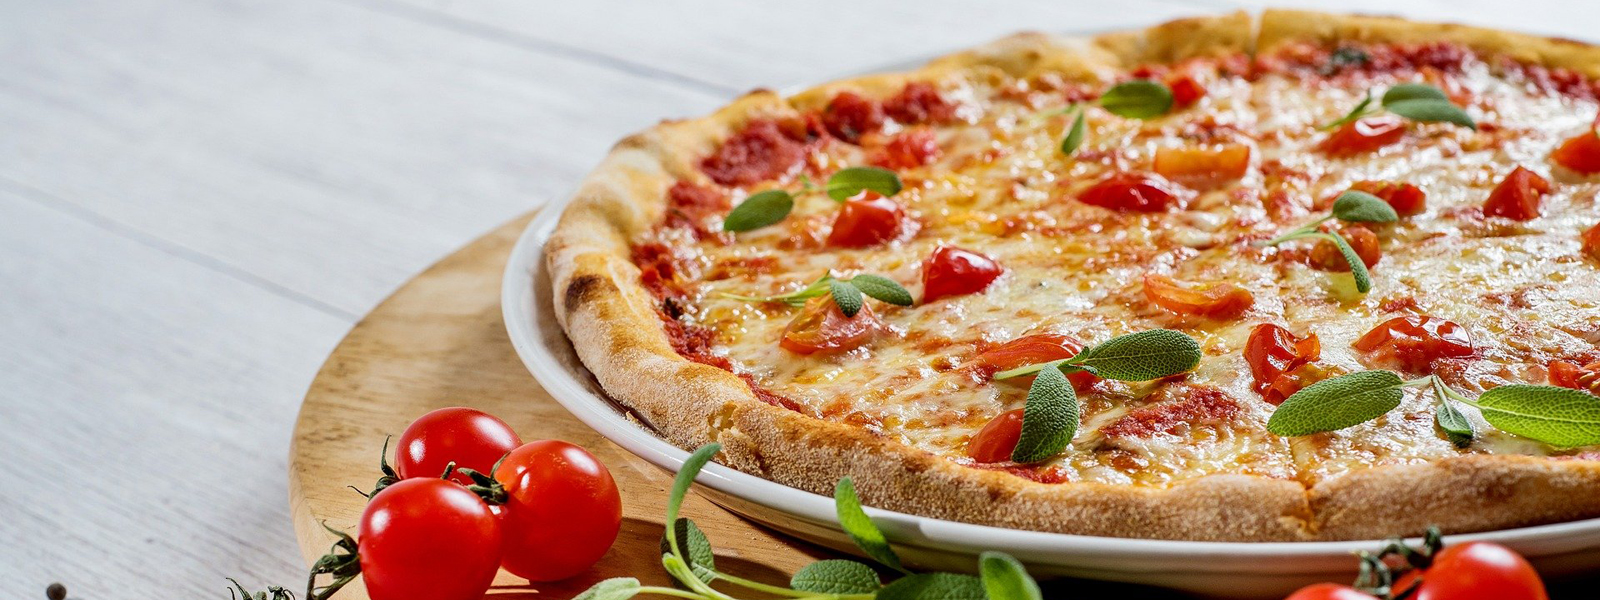 хрустящее тесто для пиццы по итальянскому рецепту фото 107